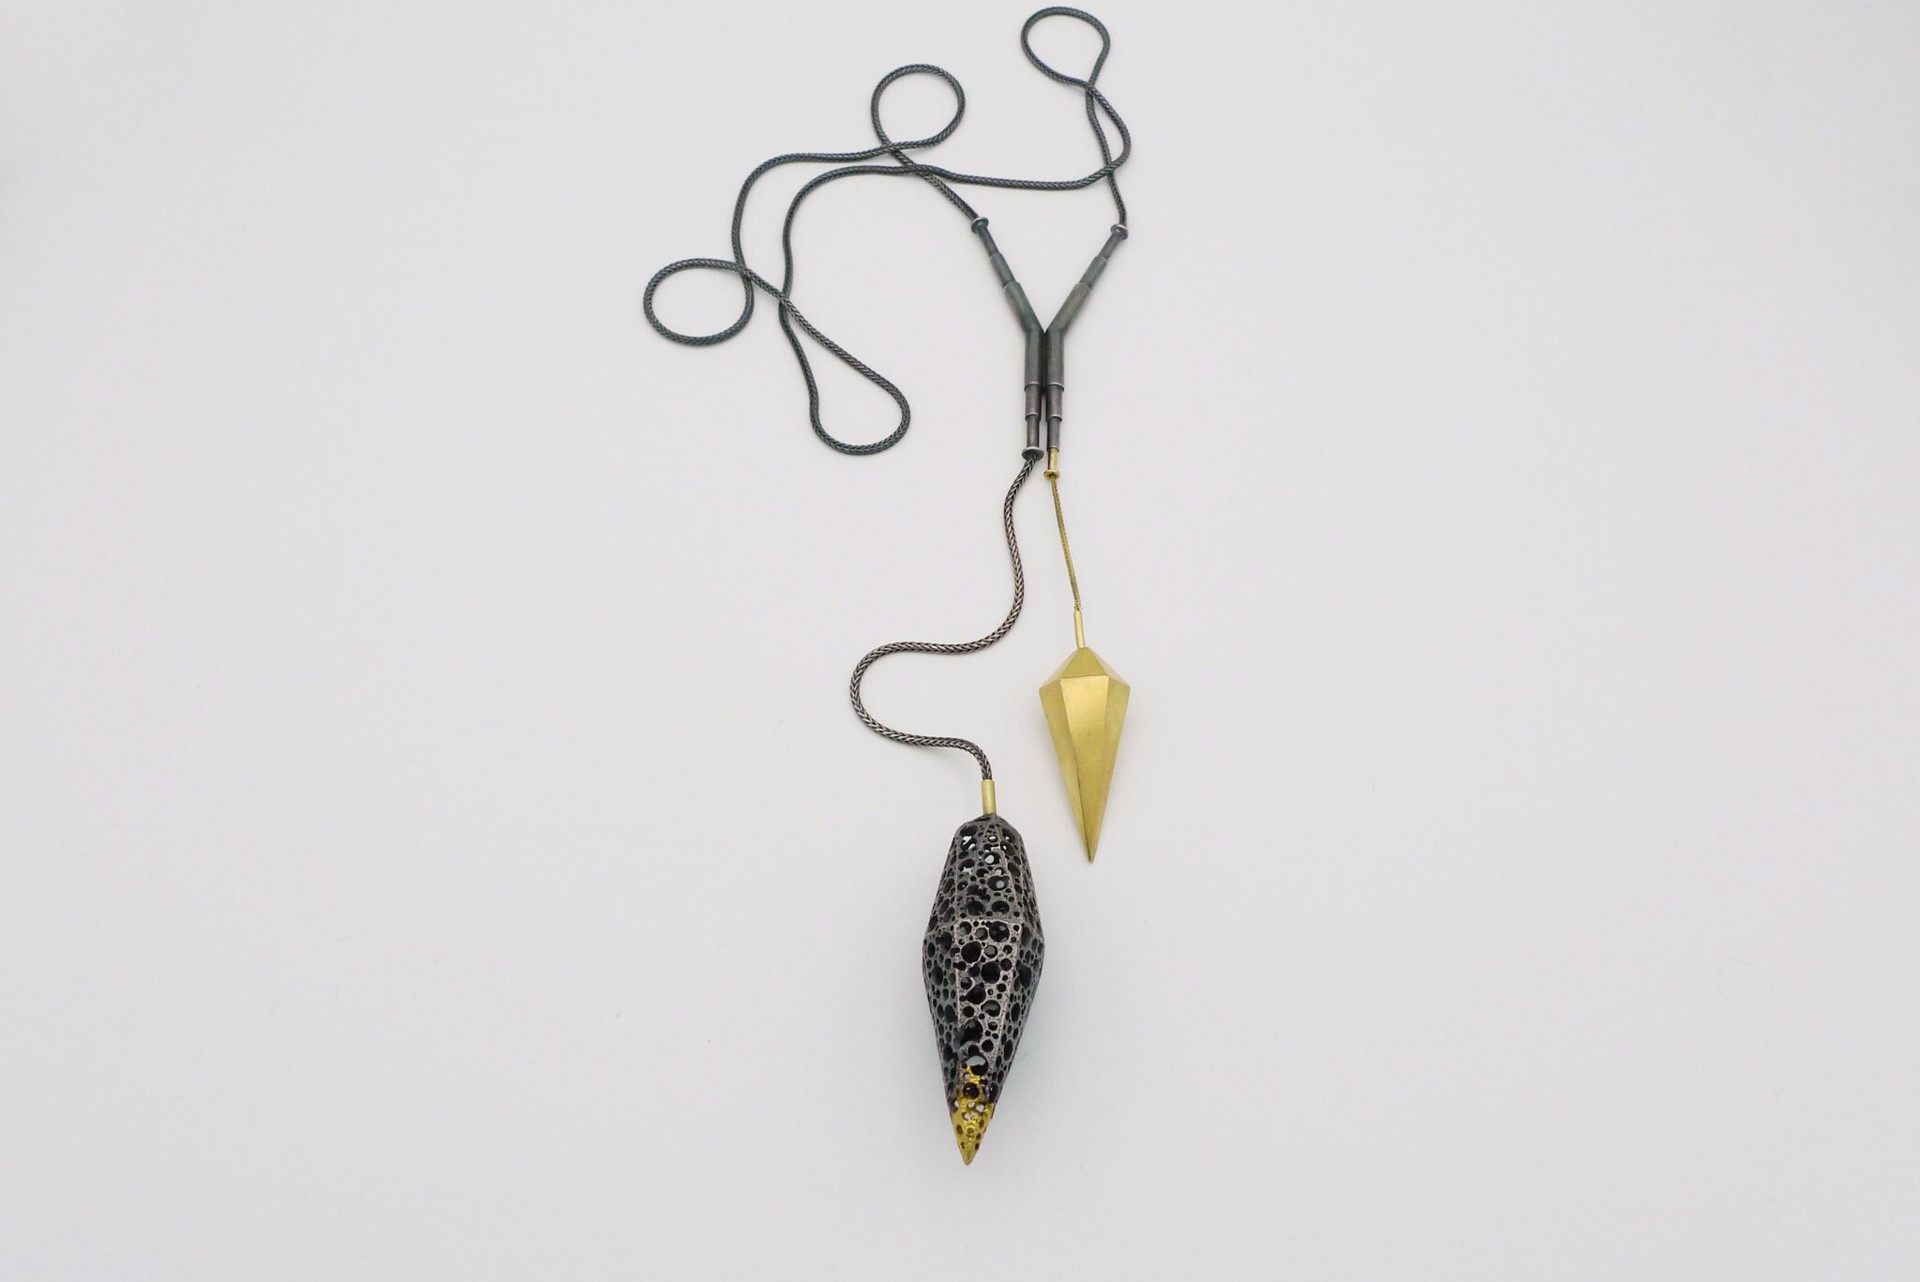 Facet Necklace #23 by Lisa Gralnick